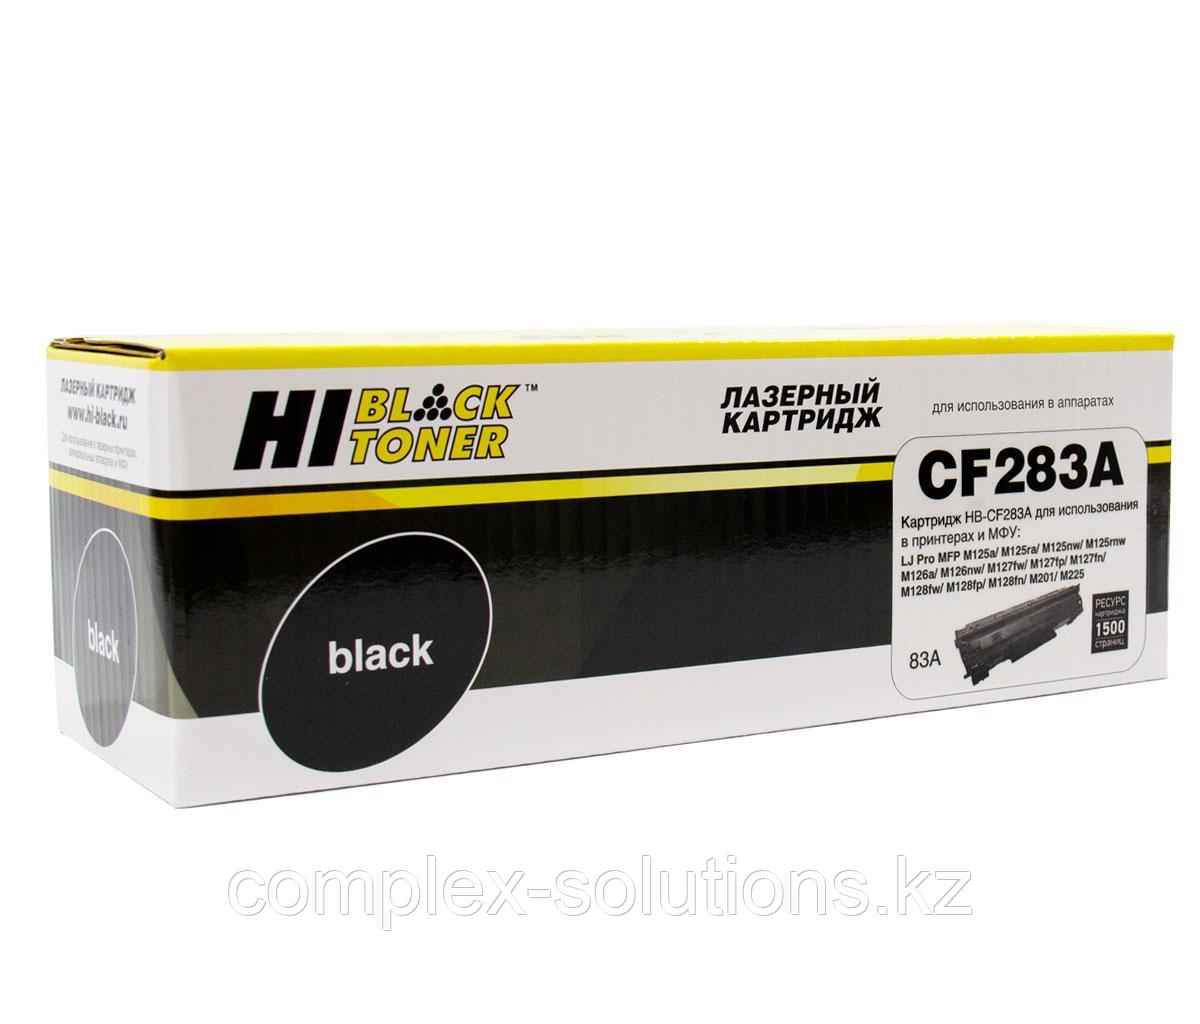 Картридж Hi-Black [CF283A] для H-P LJ Pro M125 | M126 | M127 | M201 | M225MFP, 1,5K | [качественный дубликат]